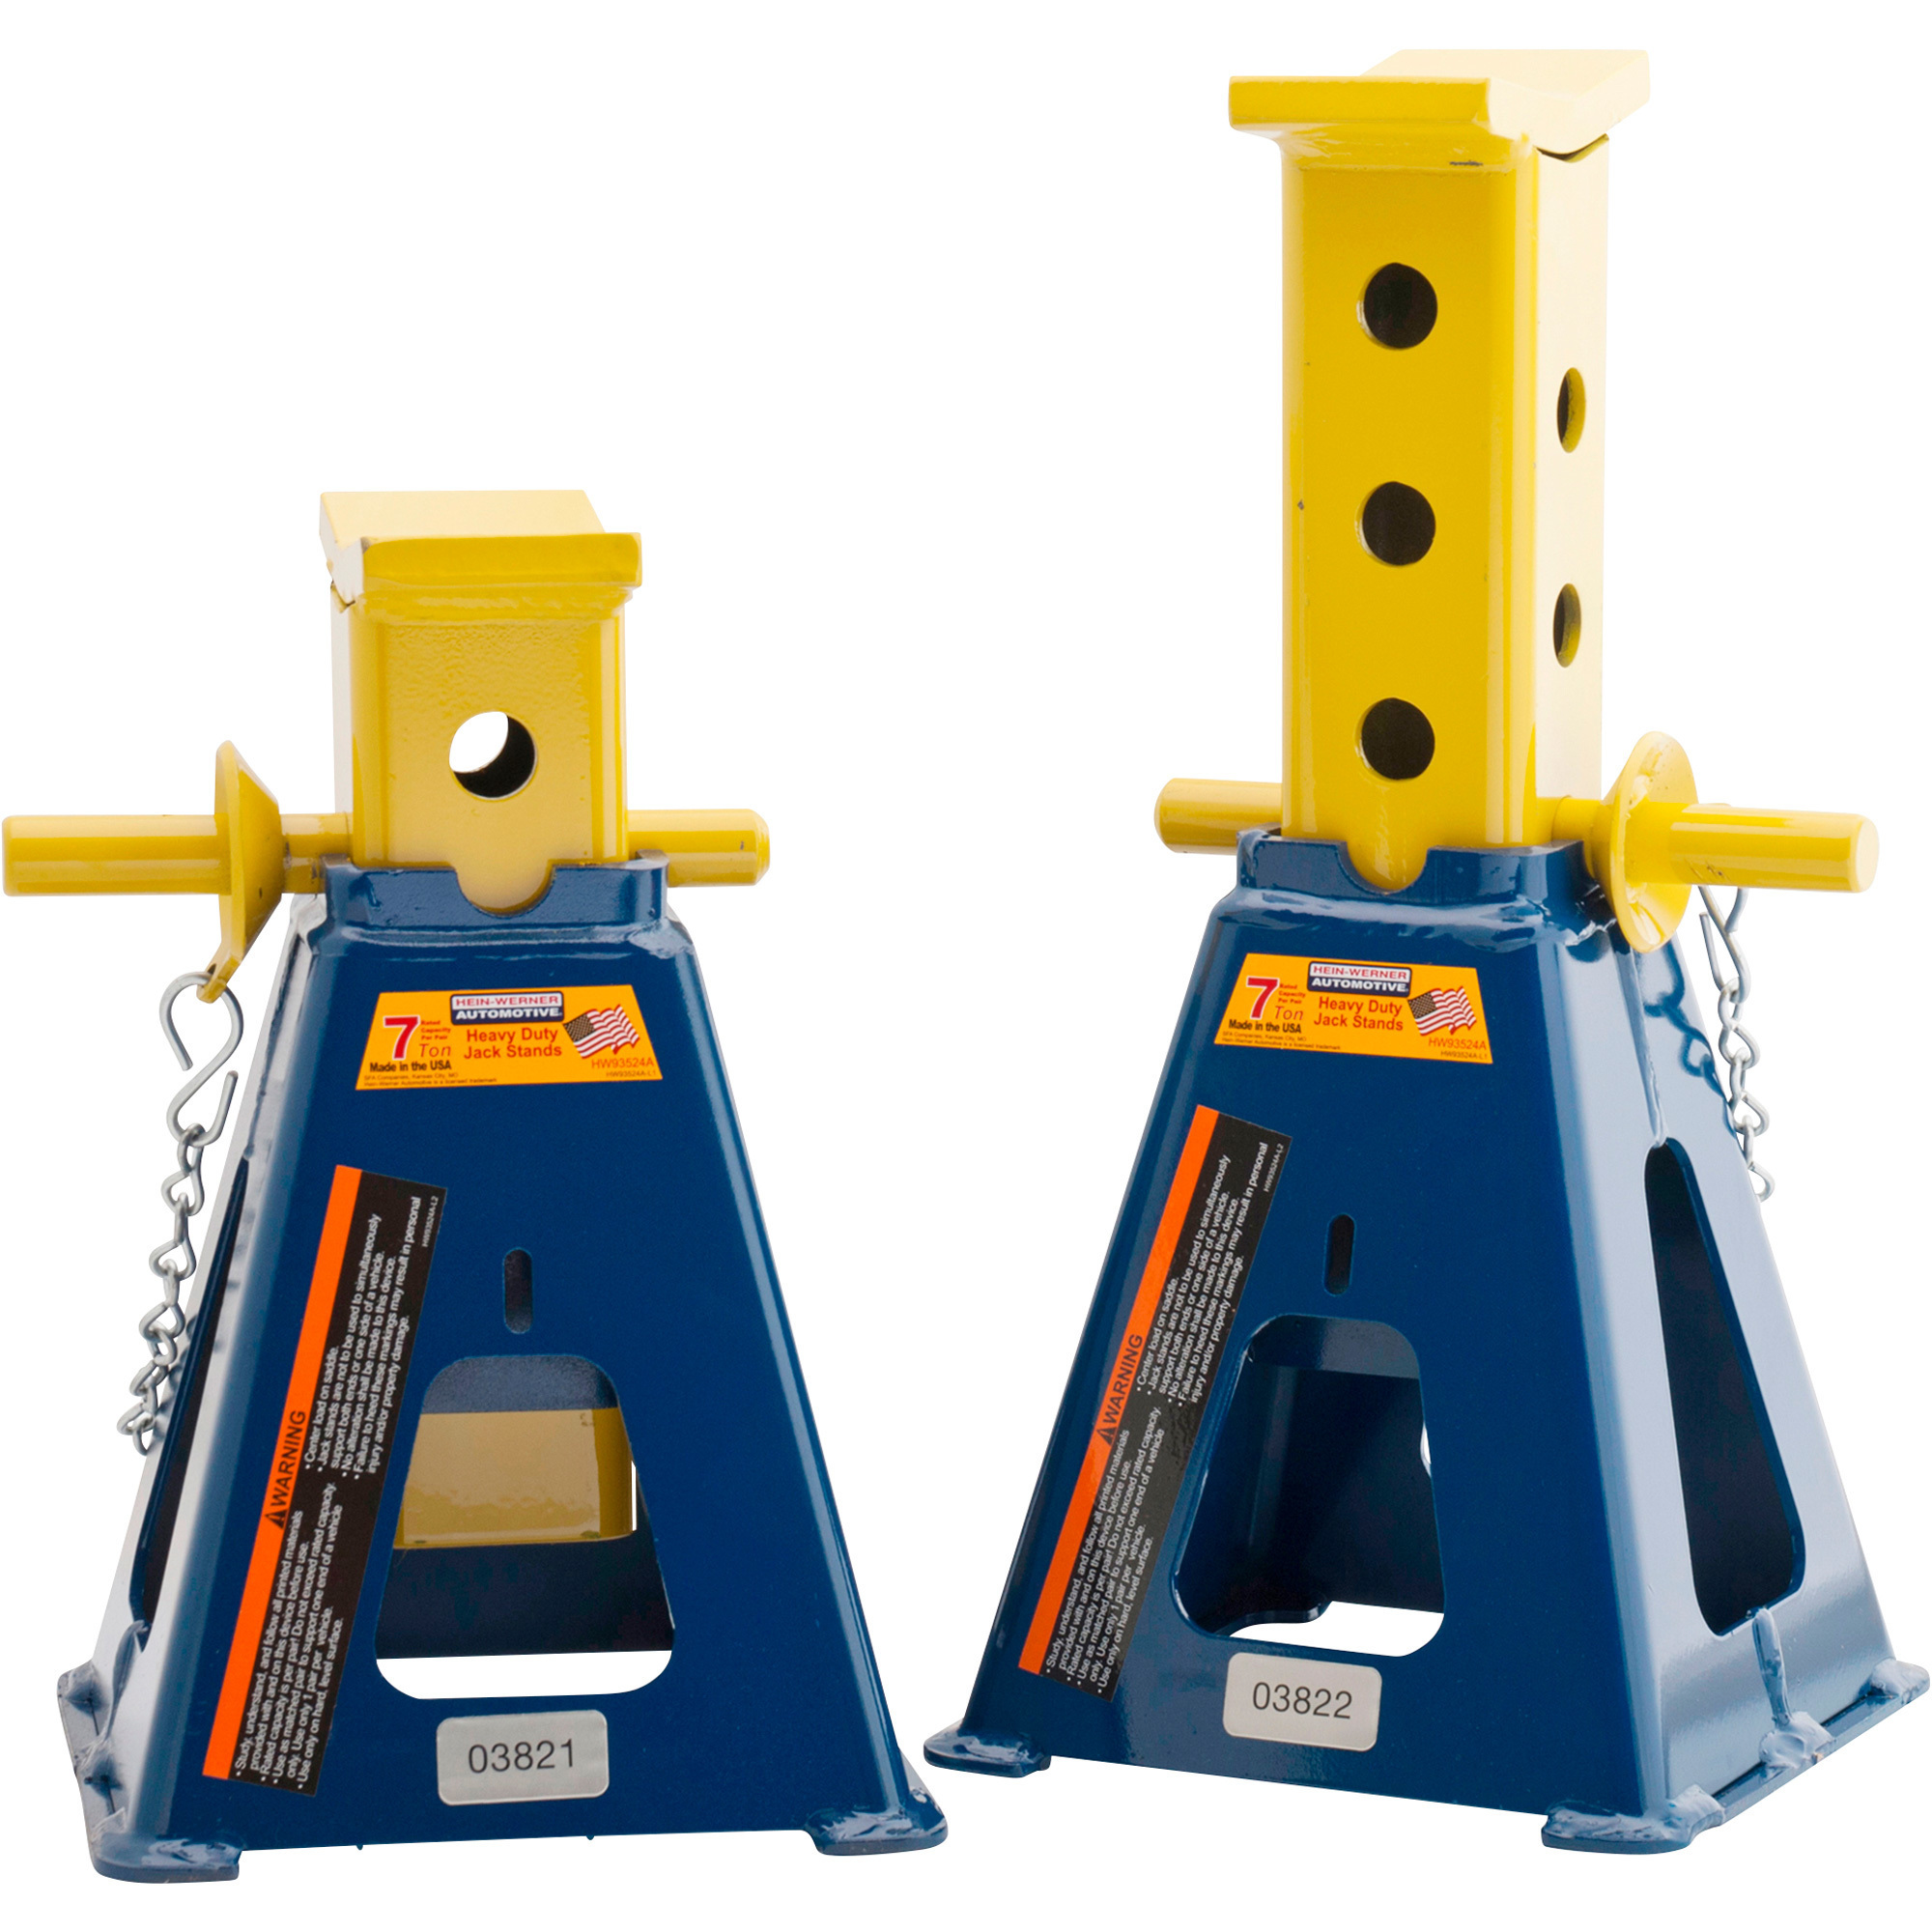 Hein-Werner Fork Lift Stands, 7-Ton Capacity, Model HW93524F